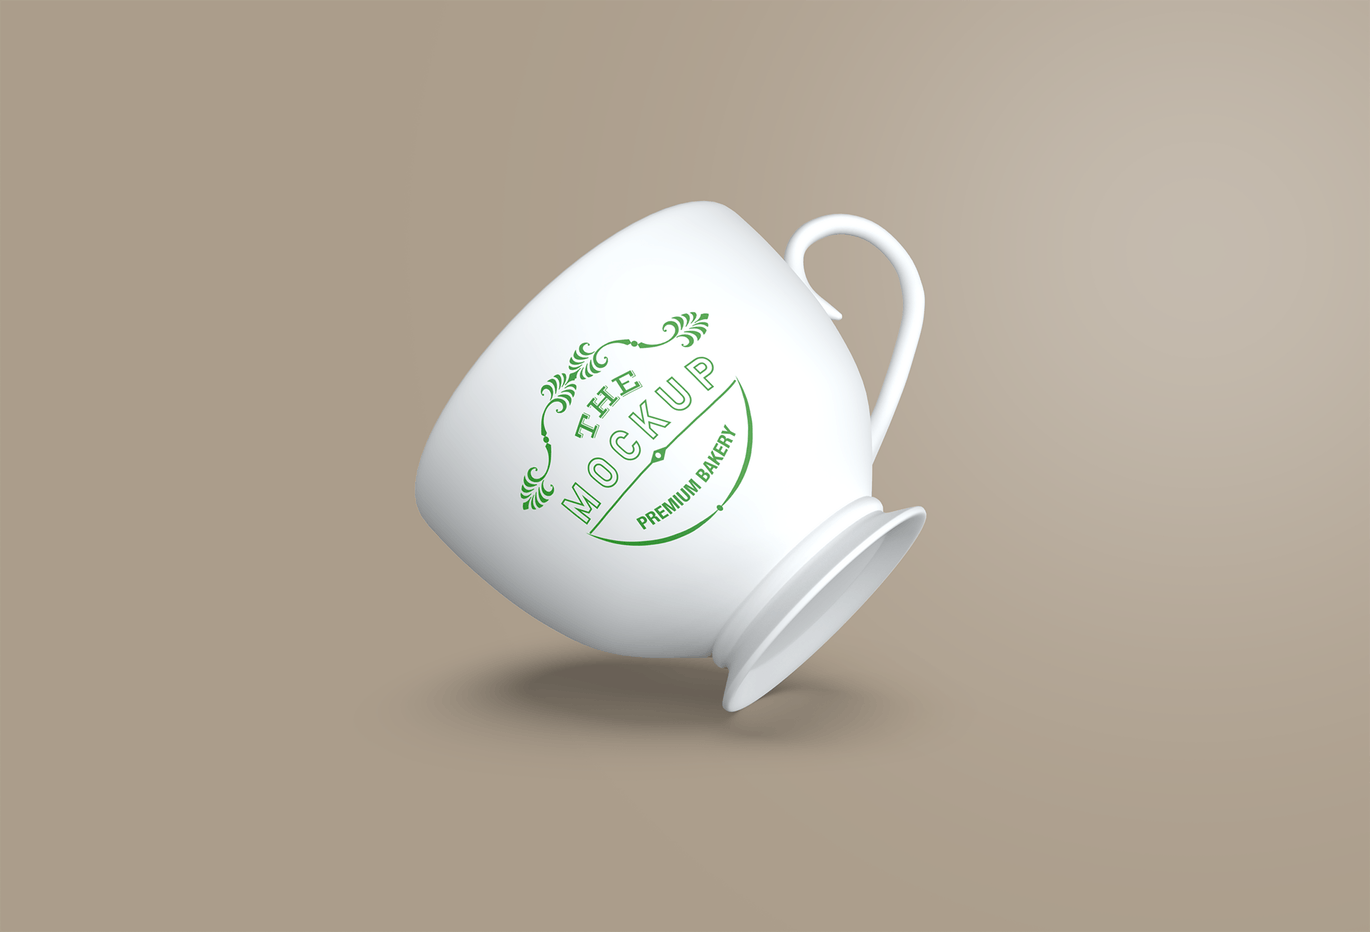 陶瓷茶杯咖啡杯外观设计样机模板v2 Cup Mockup 2.0插图3